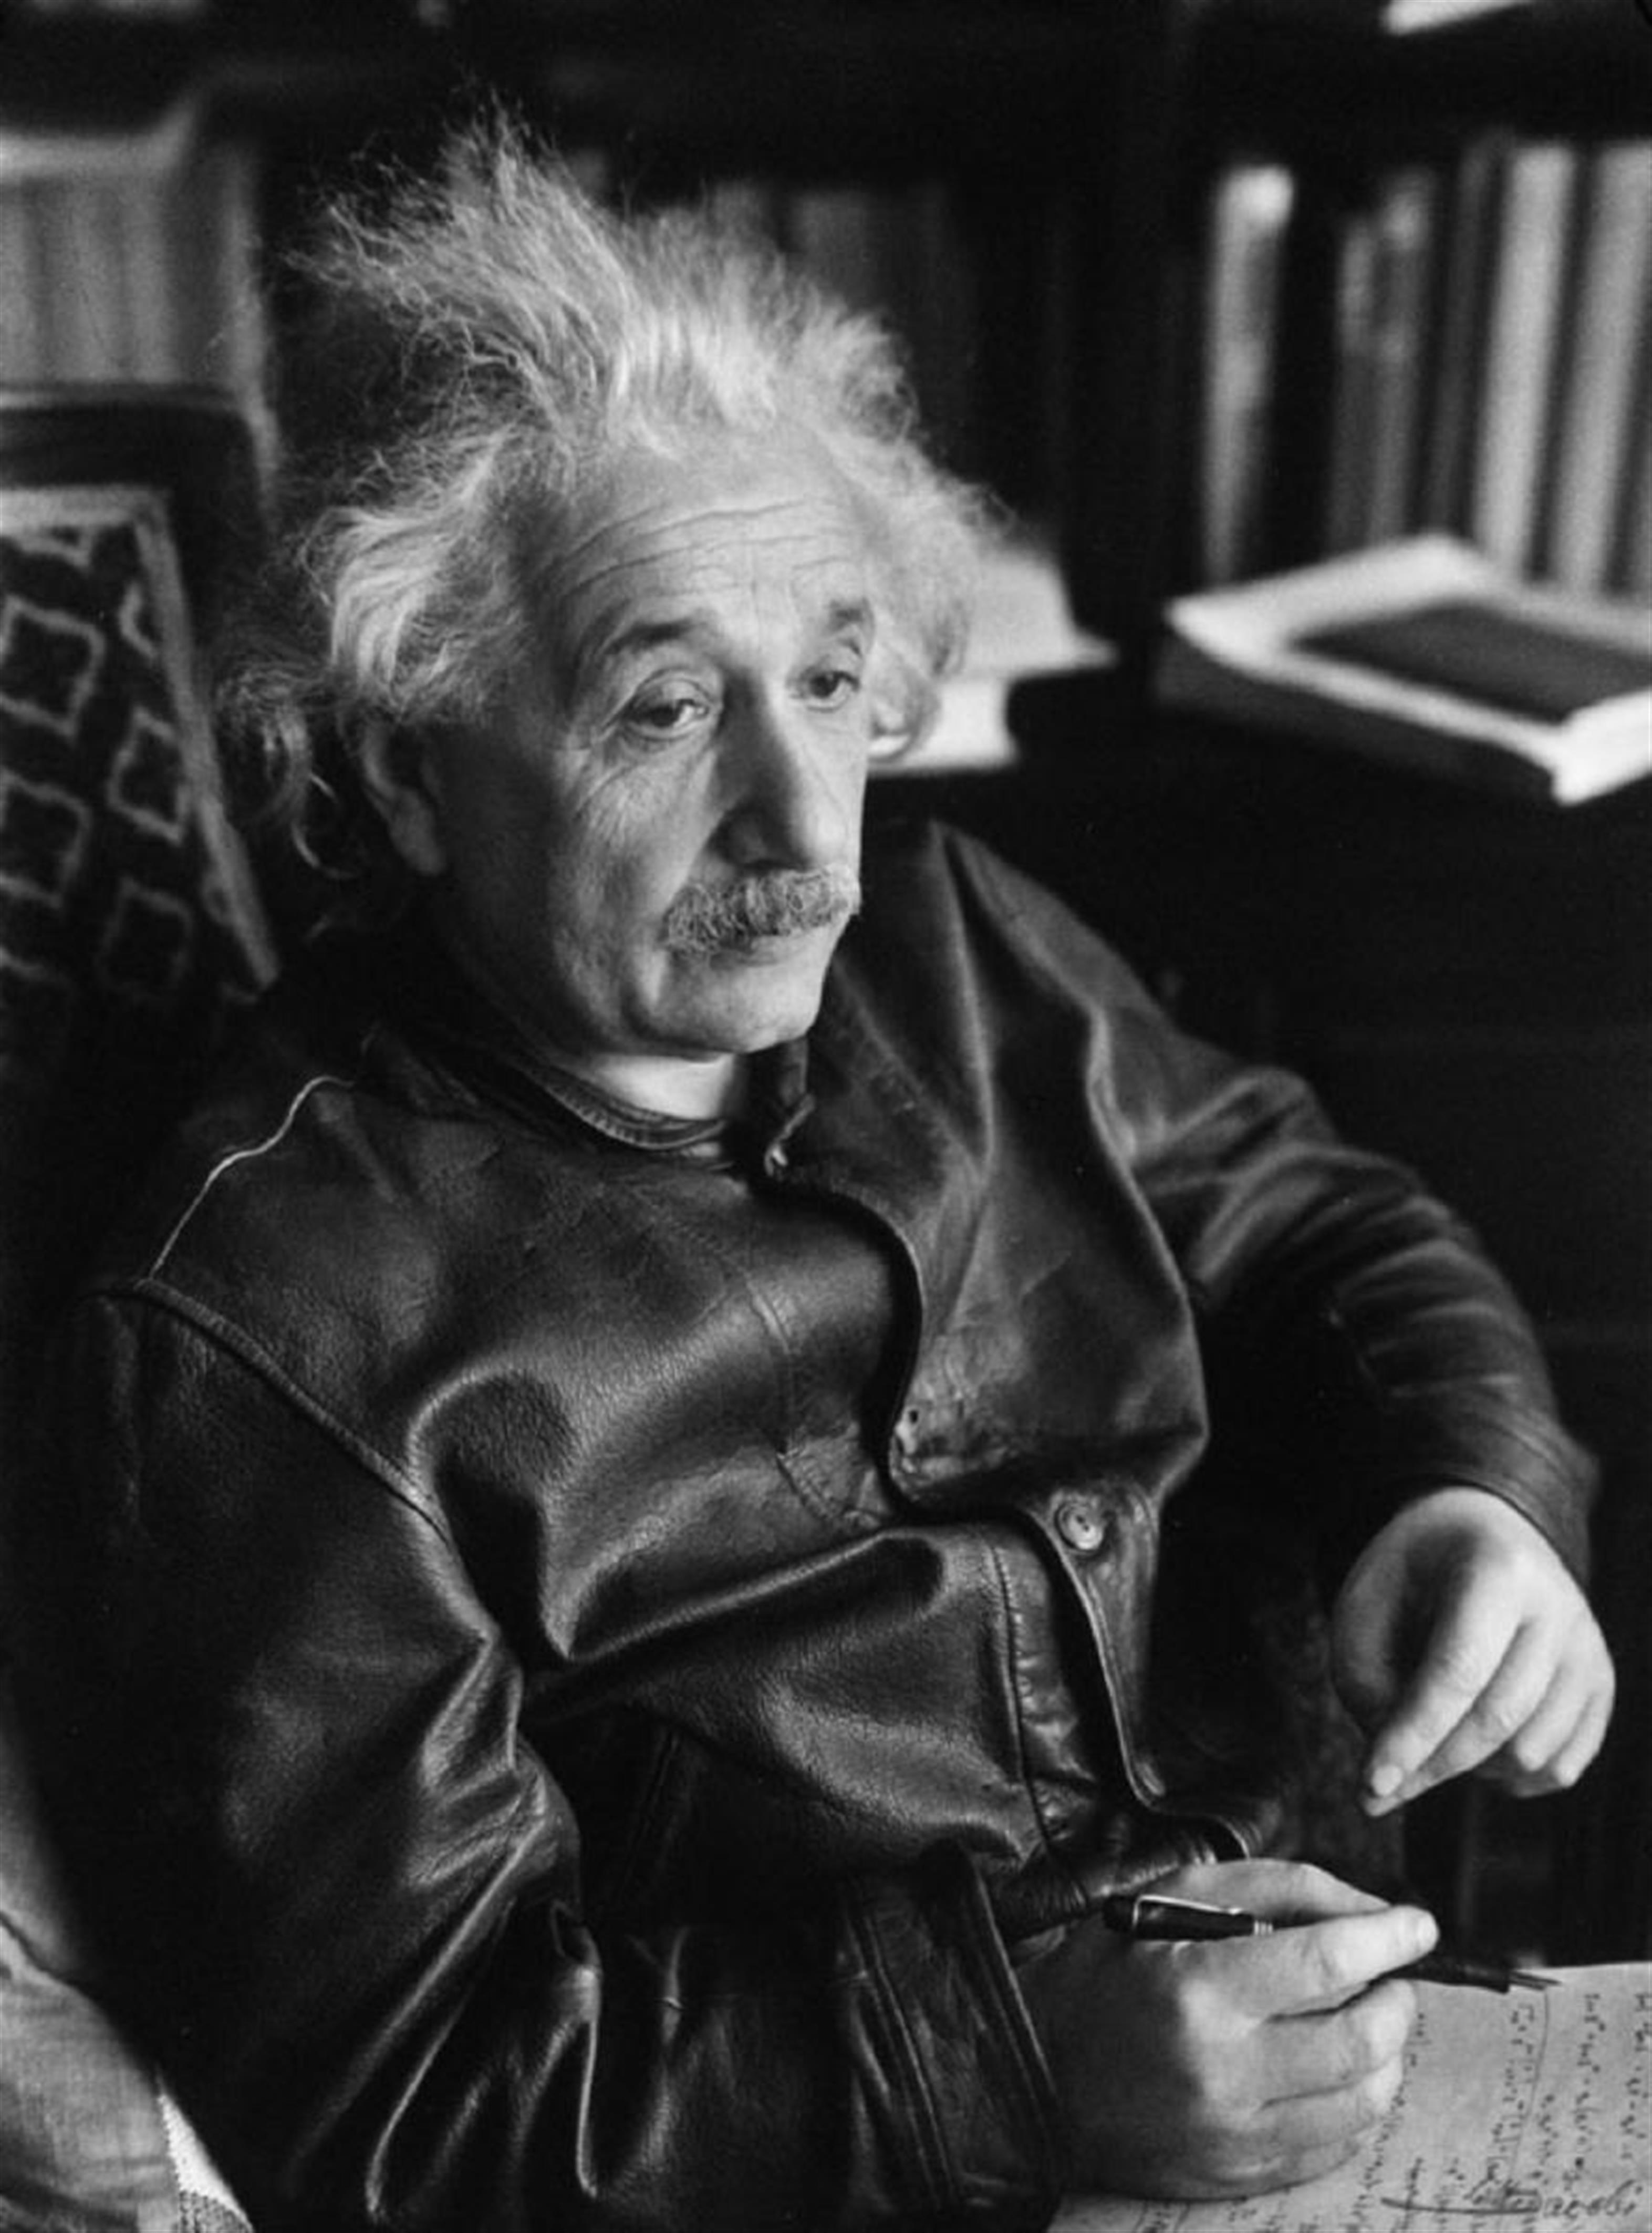 Lotte Jacobi - Albert Einstein in der Lederjacke - image-1